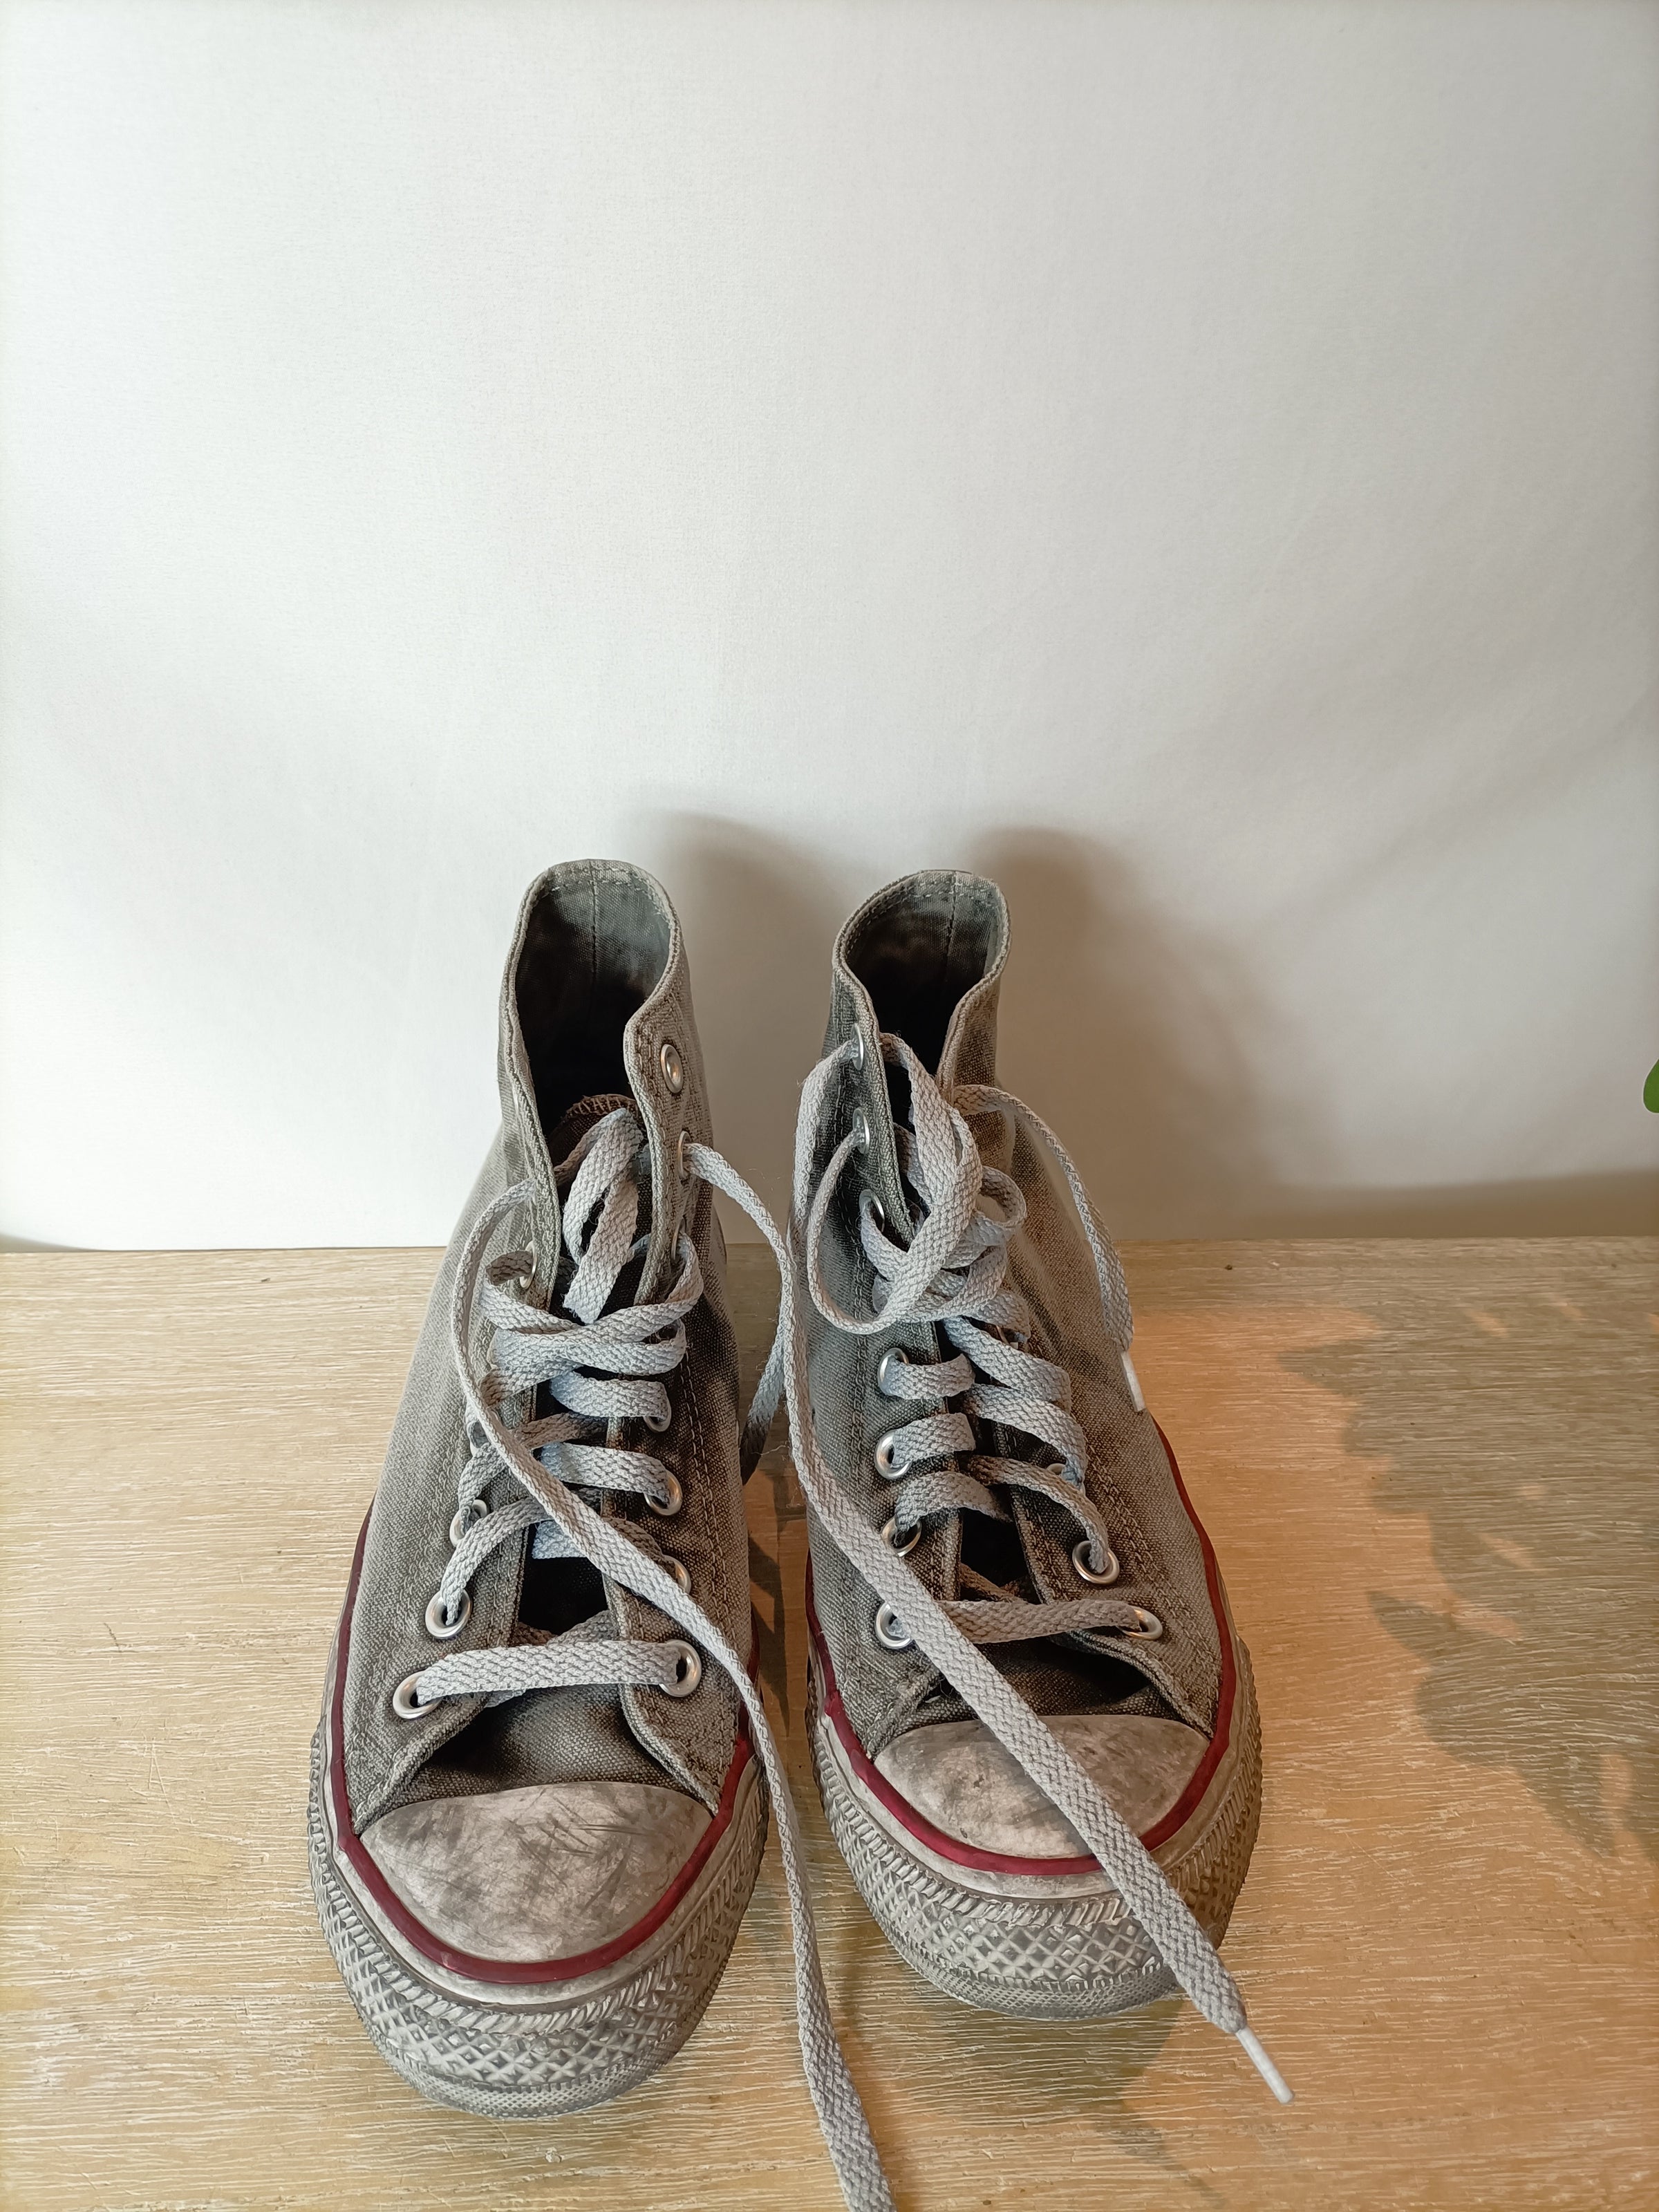 Zapatillas grises efecto desgastado. 39,5 – Hibuy market